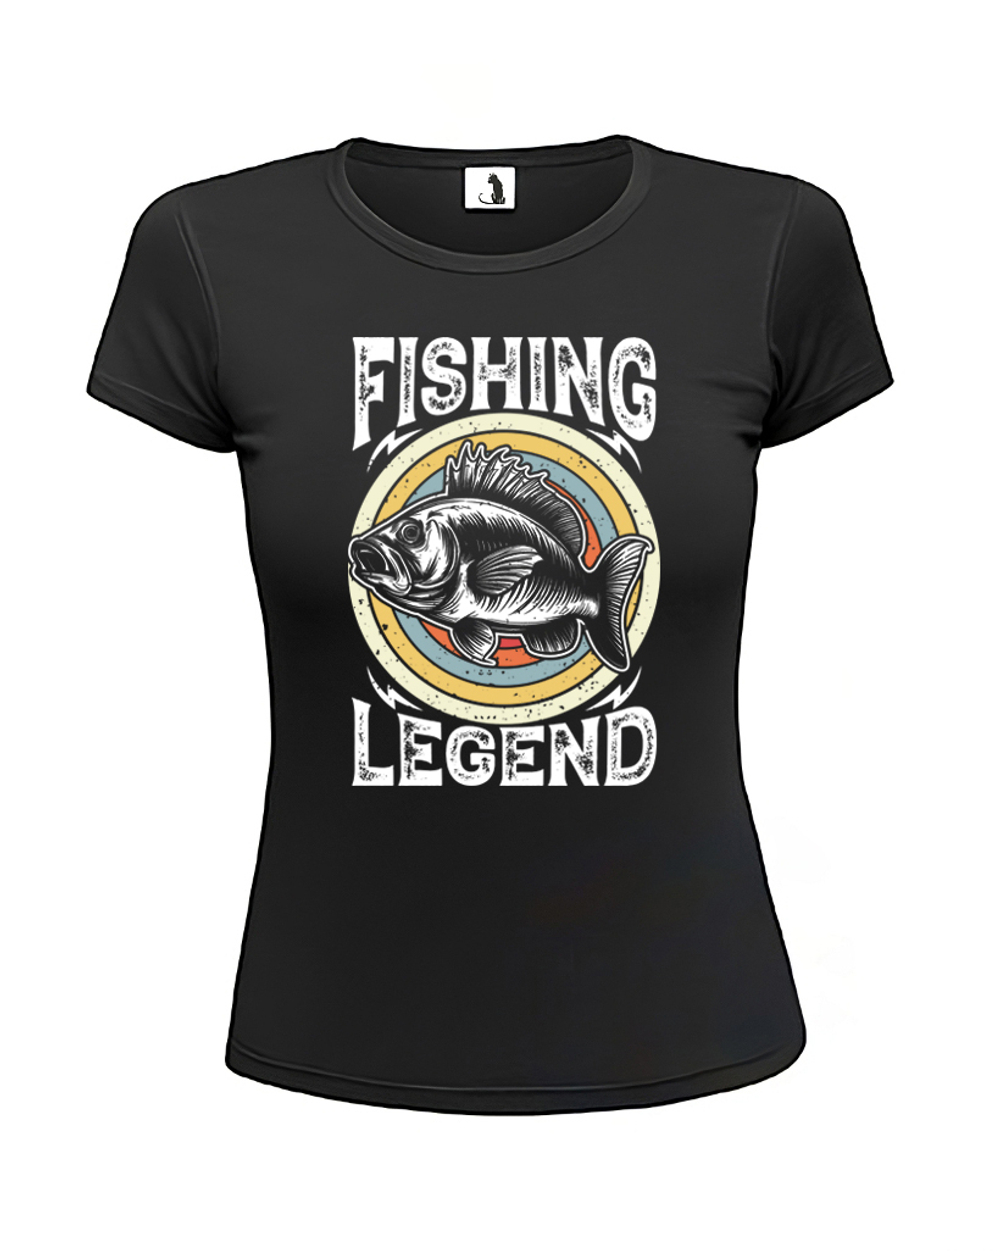 Футболка рыбака Fishing Legend женская приталенная черная